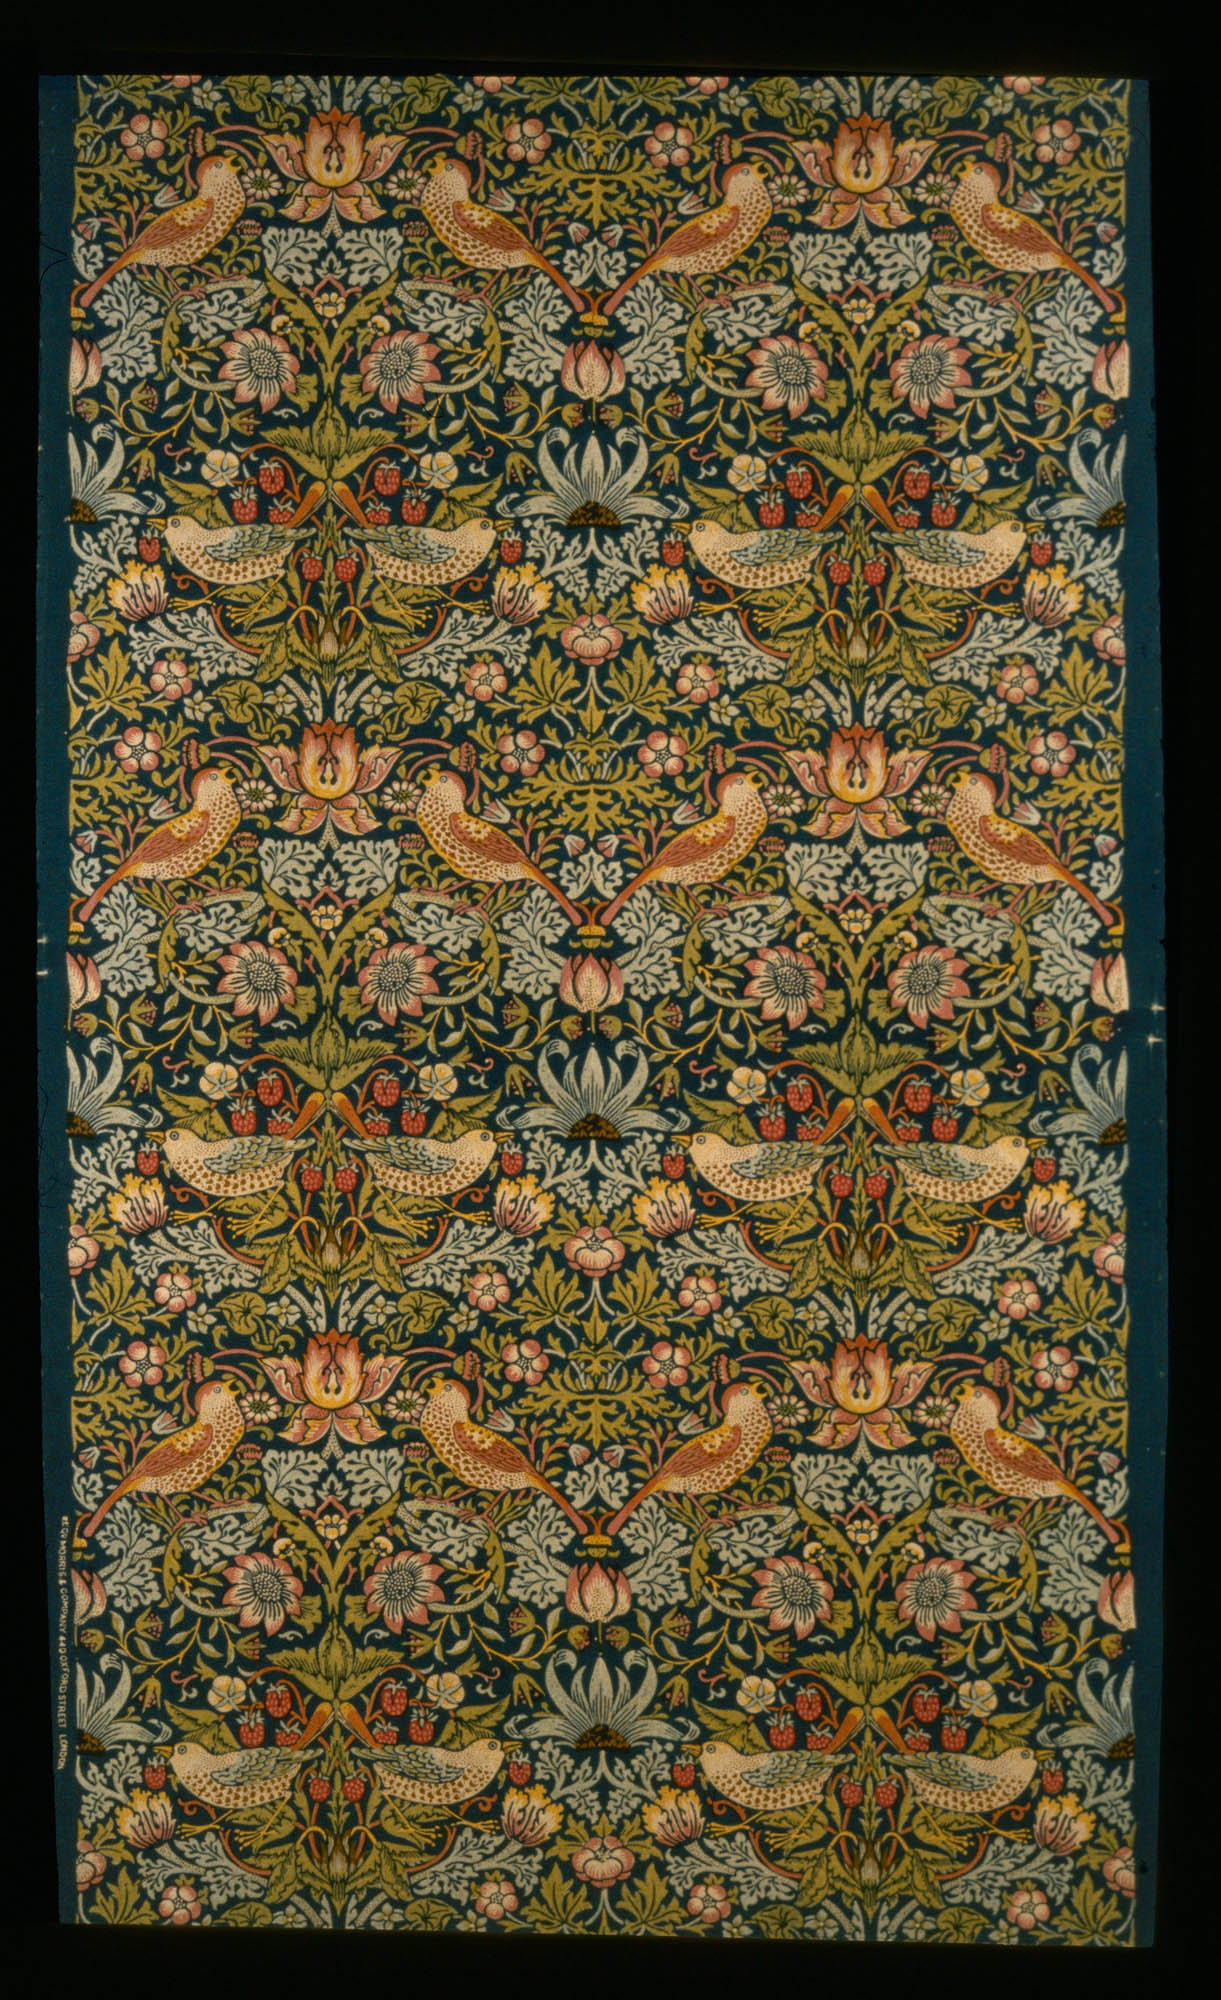 Honeysuckle William Morris Tissu décoratif